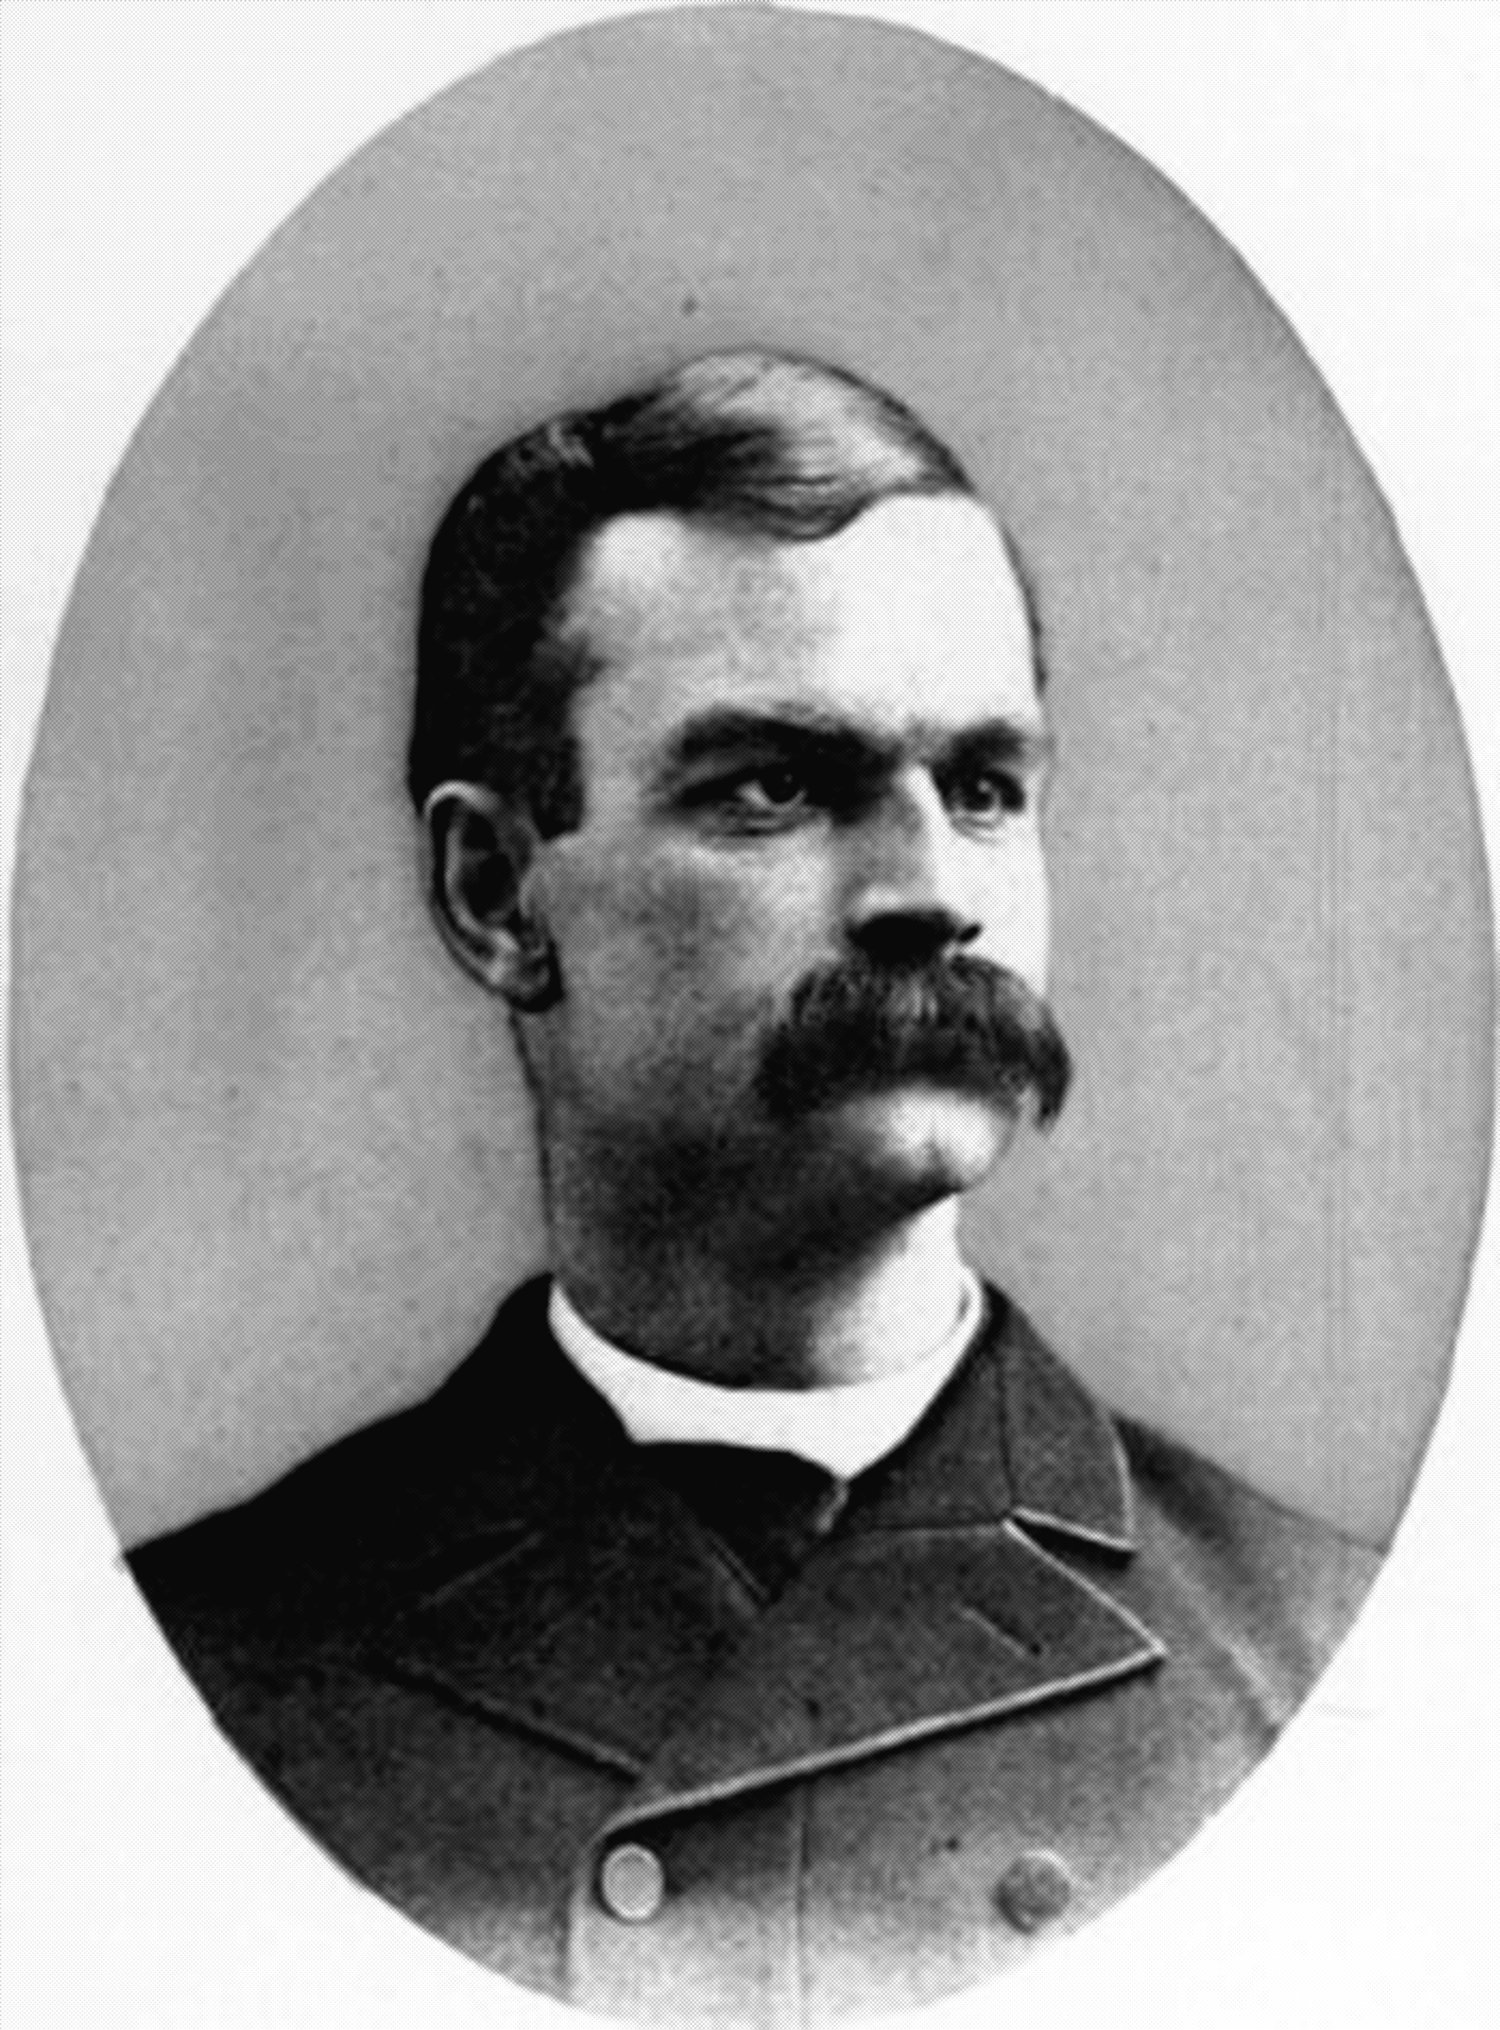 Congressman Charles E. Littlefield